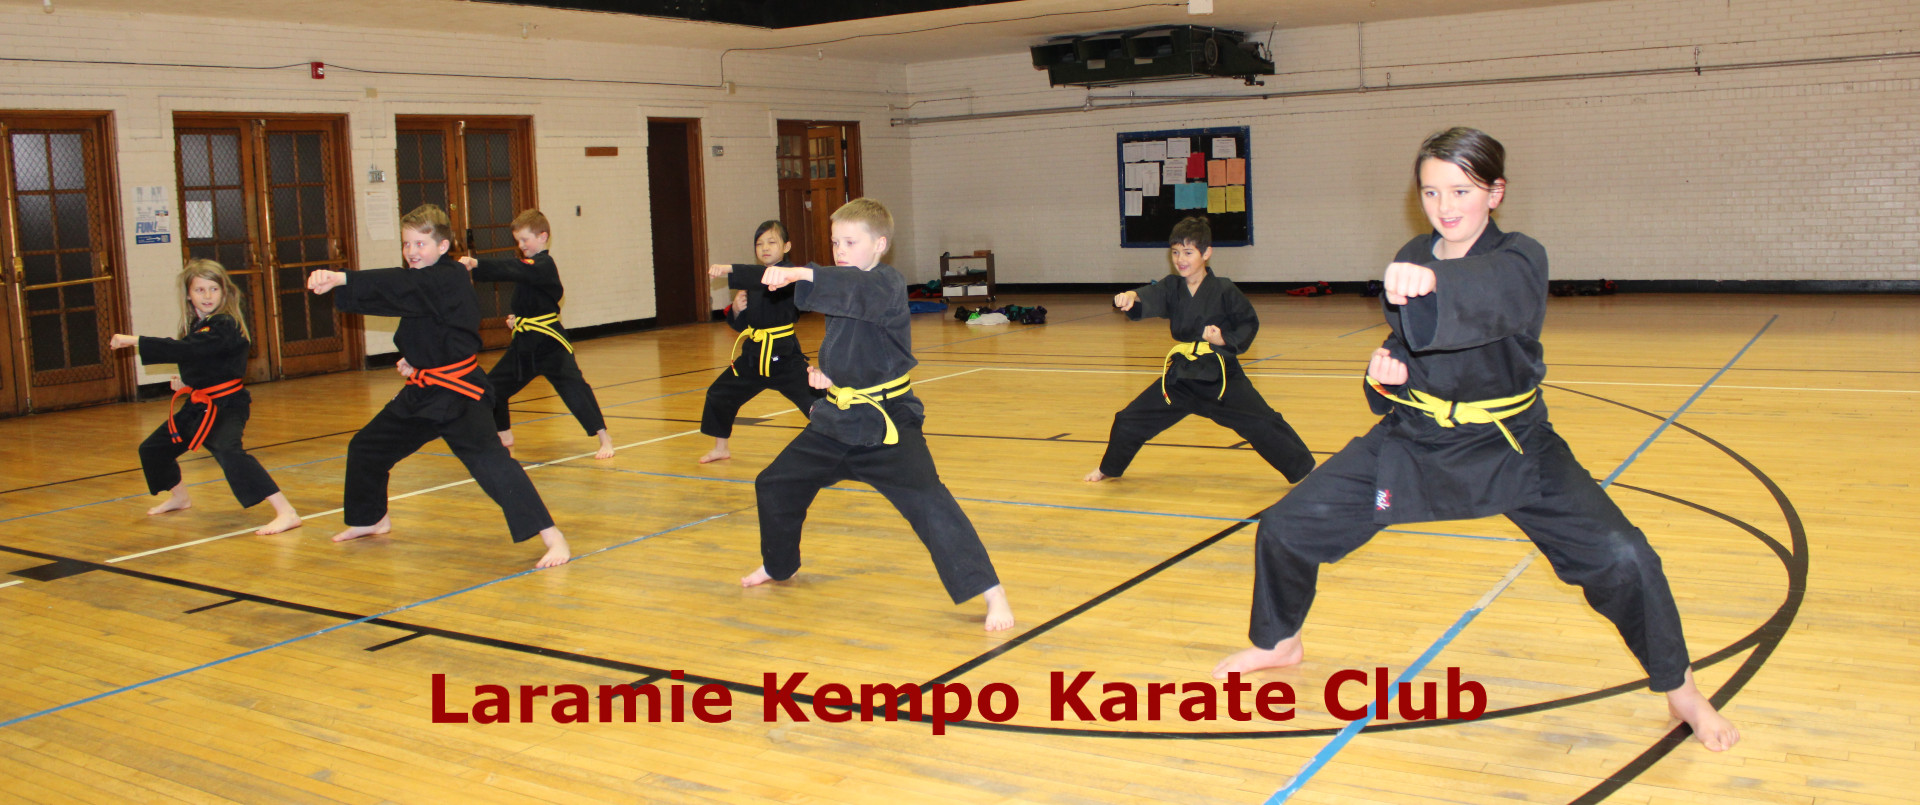 Laramie Kempo Karate Club – Laramie, Wyoming